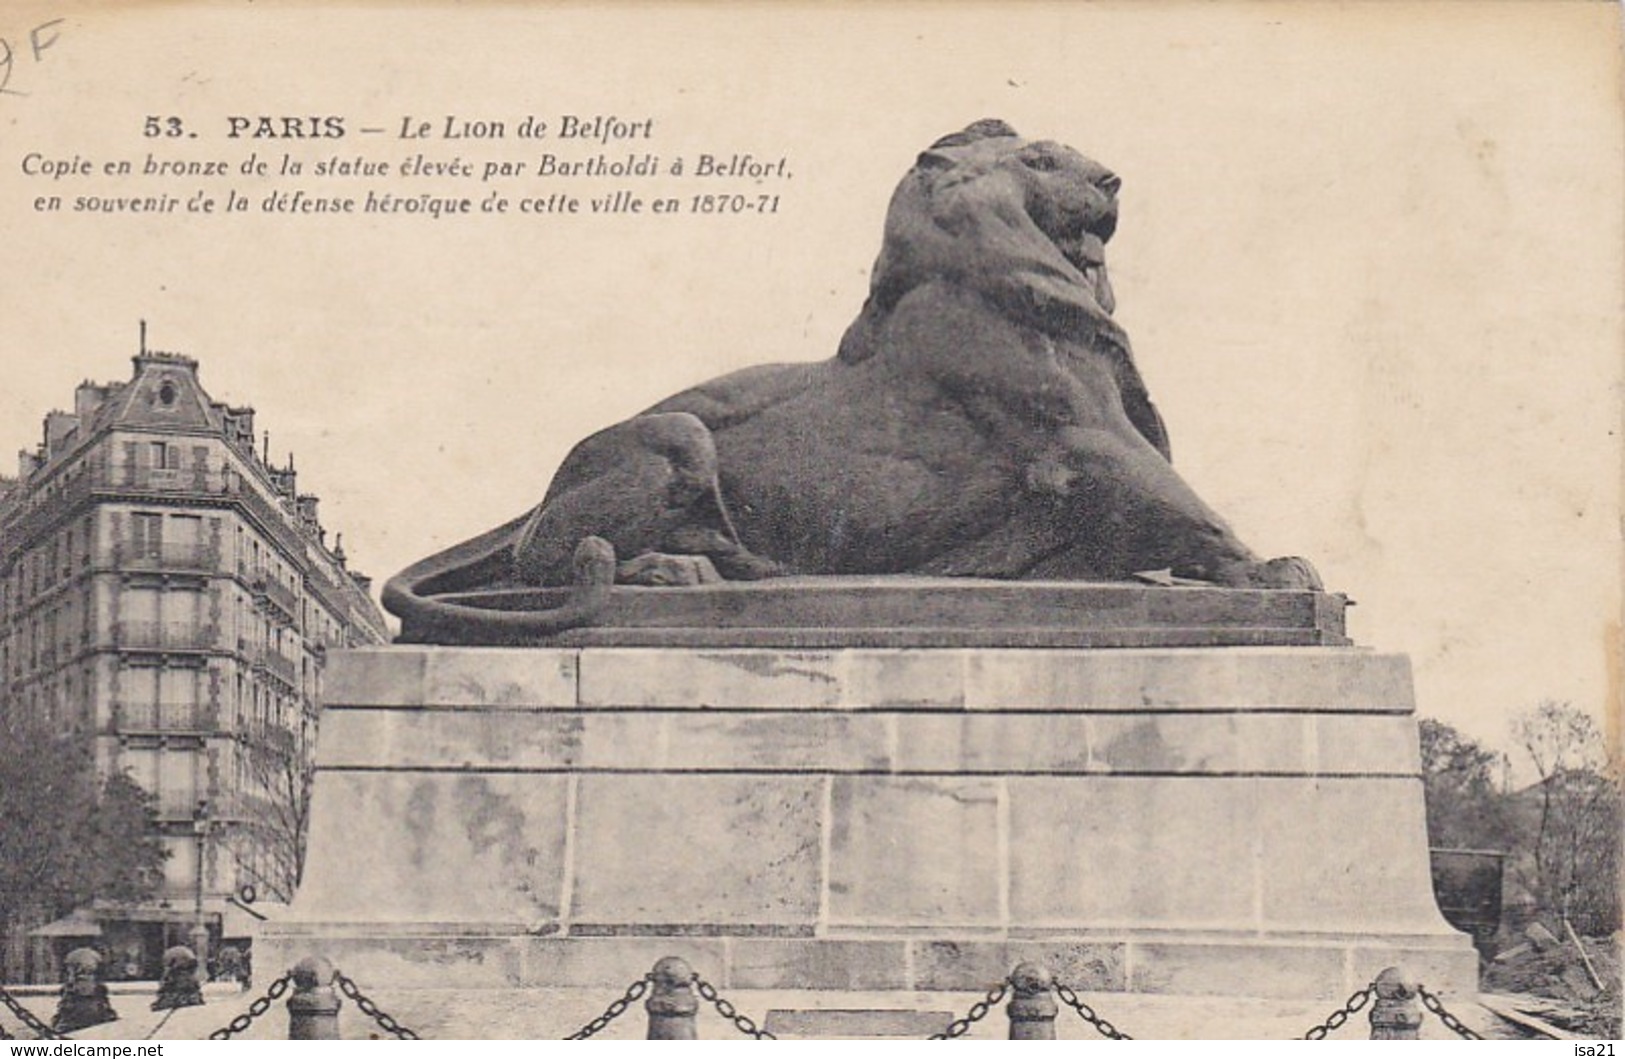 lot de 50 CPA de PARIS toutes scannées: monuments;; Tour Eiffel, Montmartre, ponts; églises, rues, République, etc.